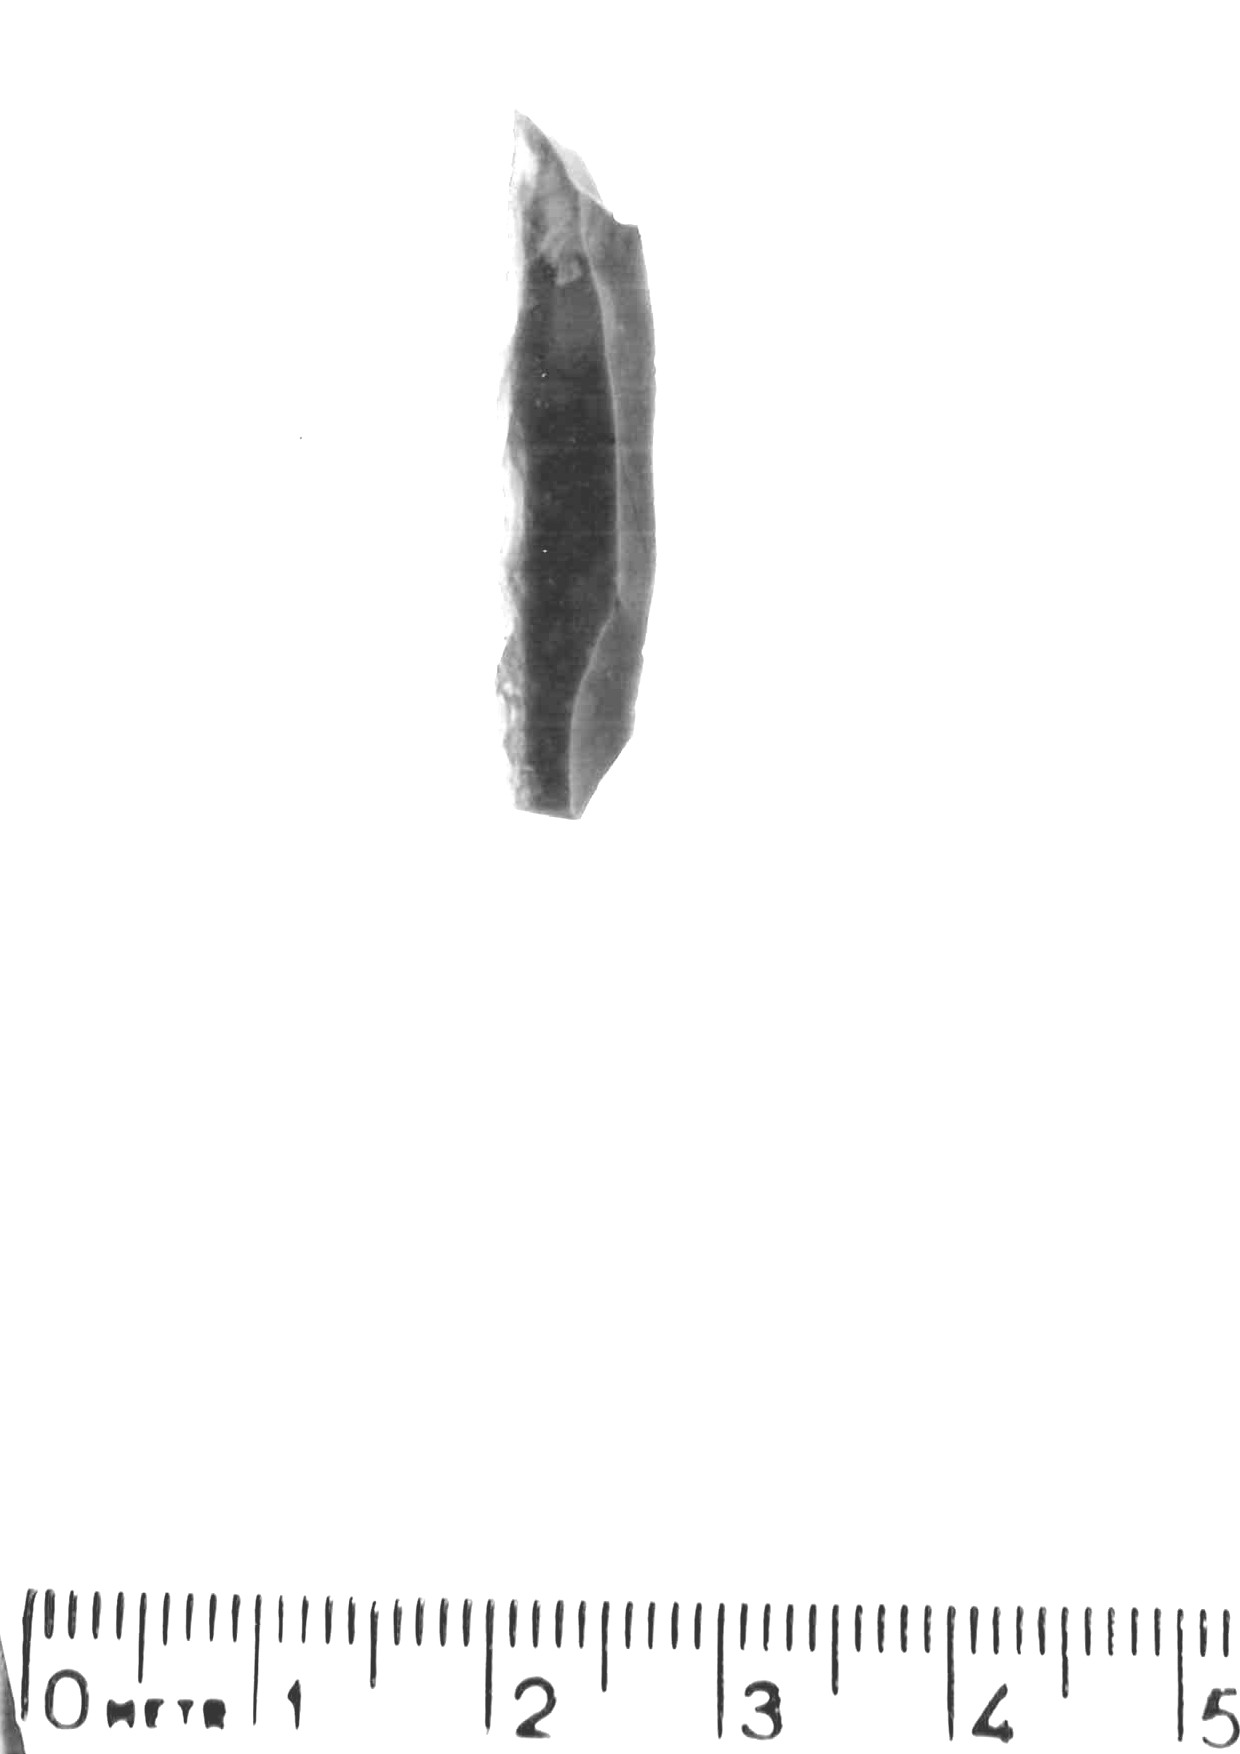 lama a dorso profondo - epigravettiano antico (paleolitico superiore)